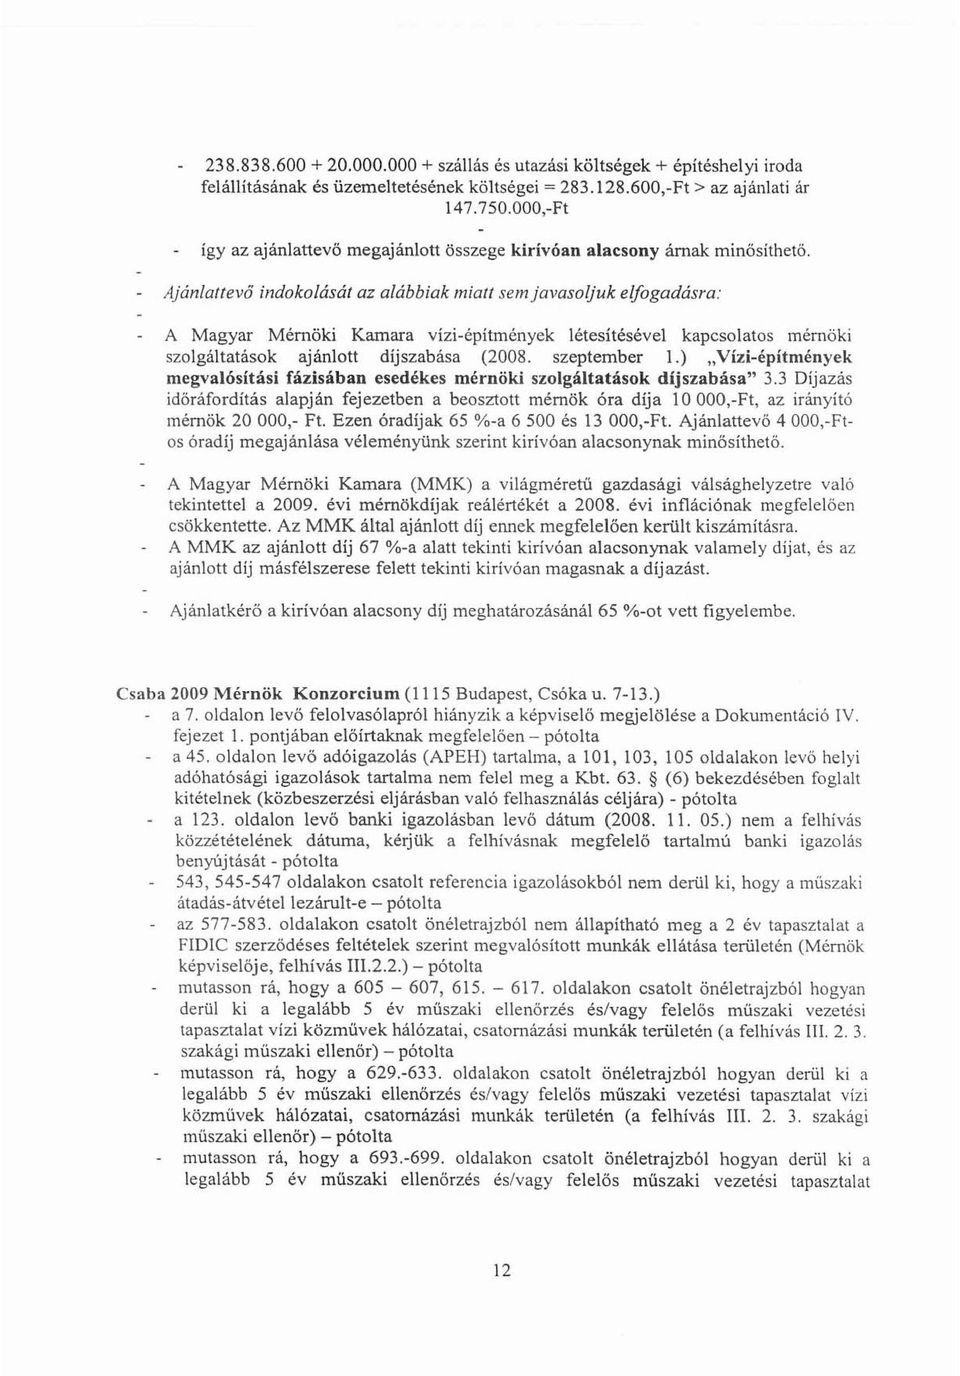 Ajánlattevőindokolását az alábbiak miatt sem javasoljuk elfogadásra: A Magyar Mérnöki Kamara vizi-építmények létesítésével kapcsolatos mérnöki szolgáltatások ajánlott díjszabása (2008. szeptember 1.).